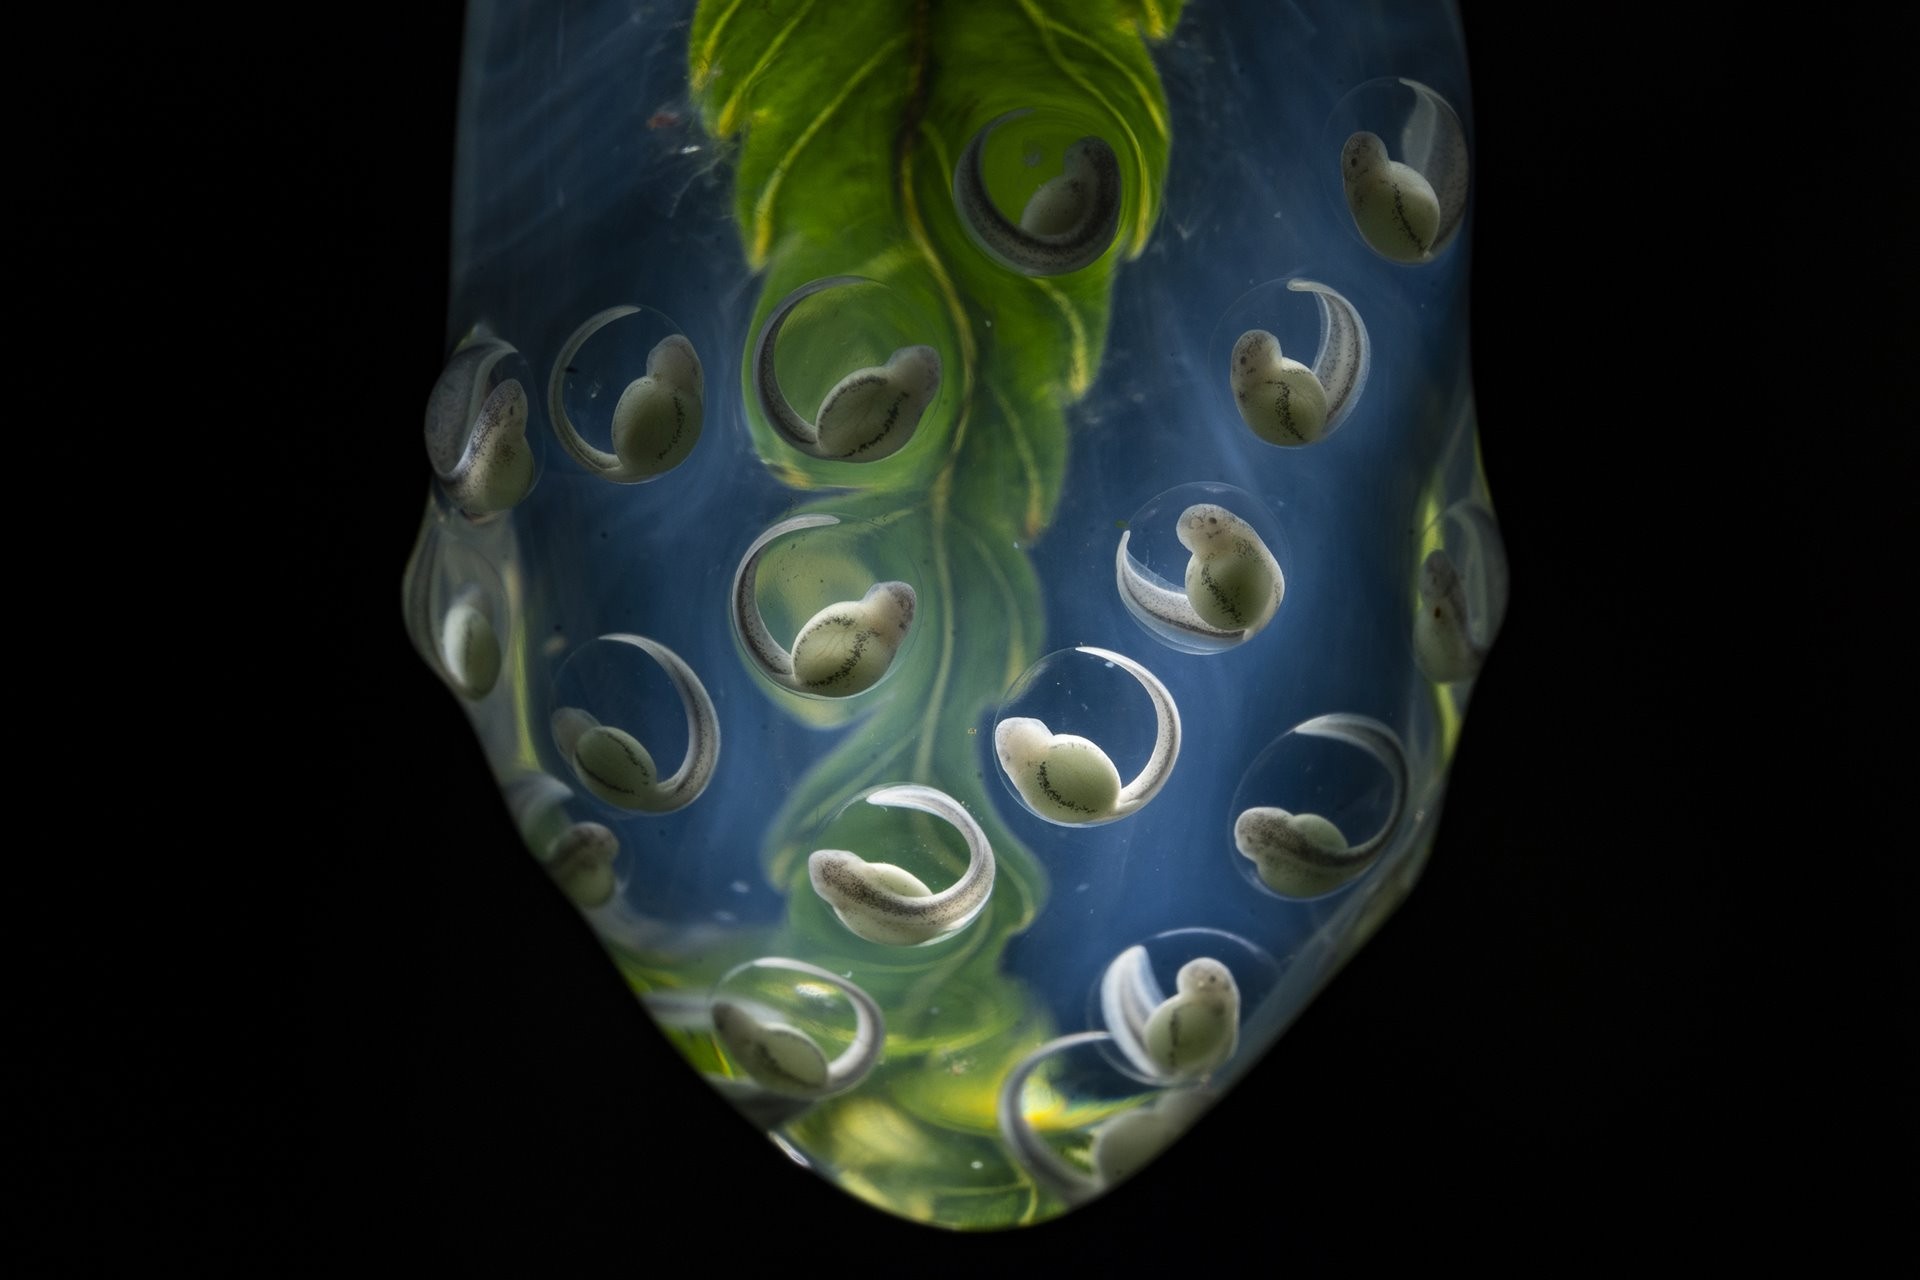 3 место в категории Природа, 2021. Яйца стеклянной лягушки, отложенные на листке в тропических лесах Анд близ биологической станции Янаяку, Напо, Эквадор. Автор Хайме Кулебрас